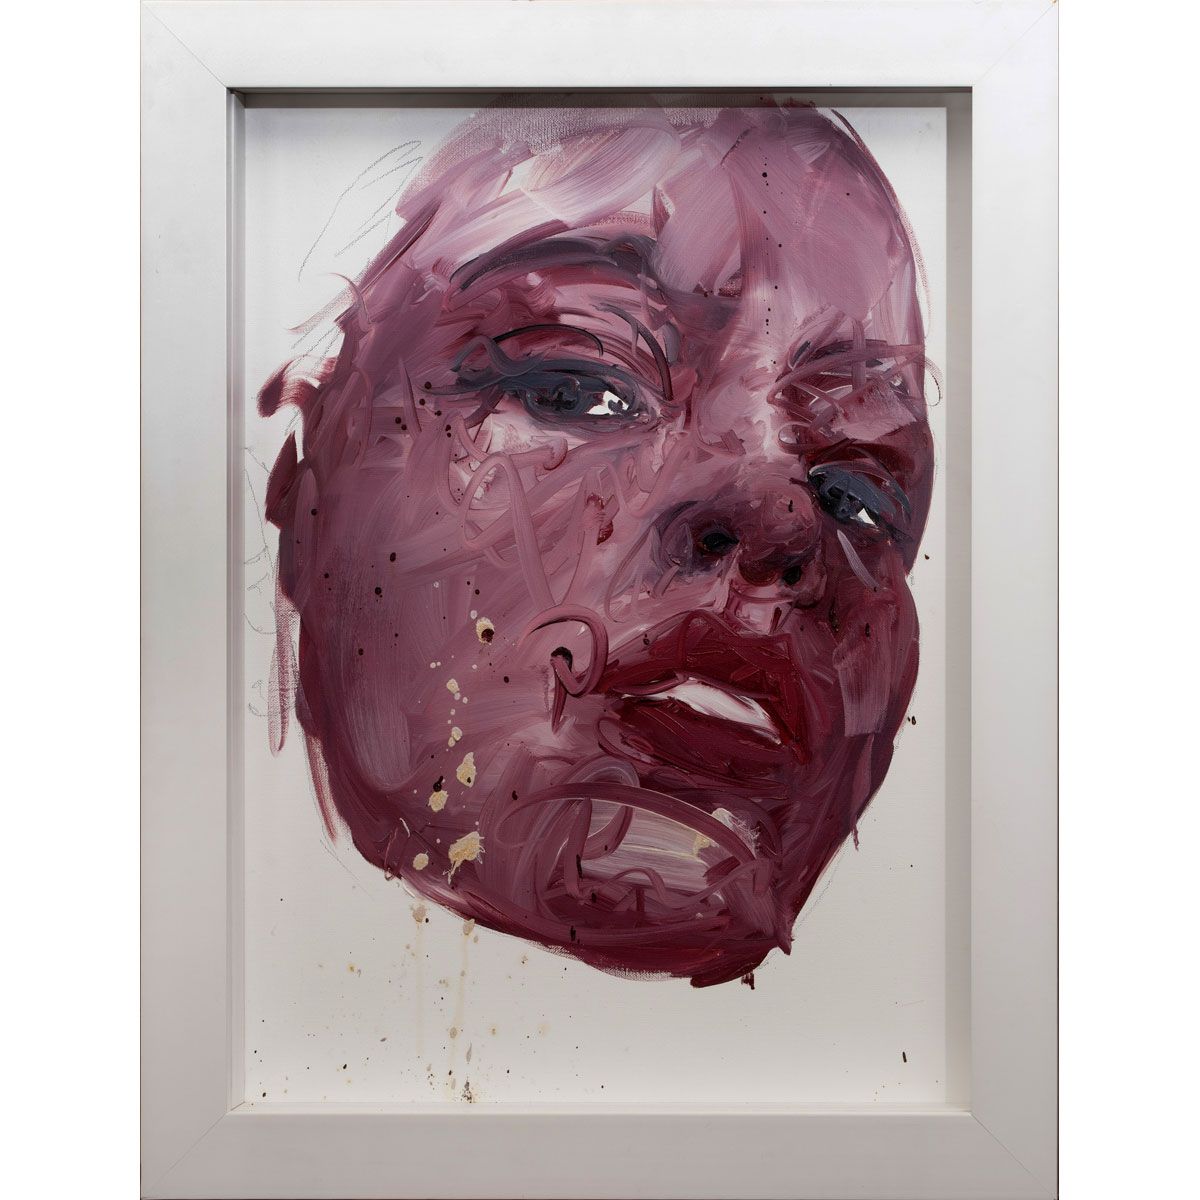 Null Philippe PASQUA, French, born in 1965

Portrait, 2010

Oil on canvas

Signe&hellip;